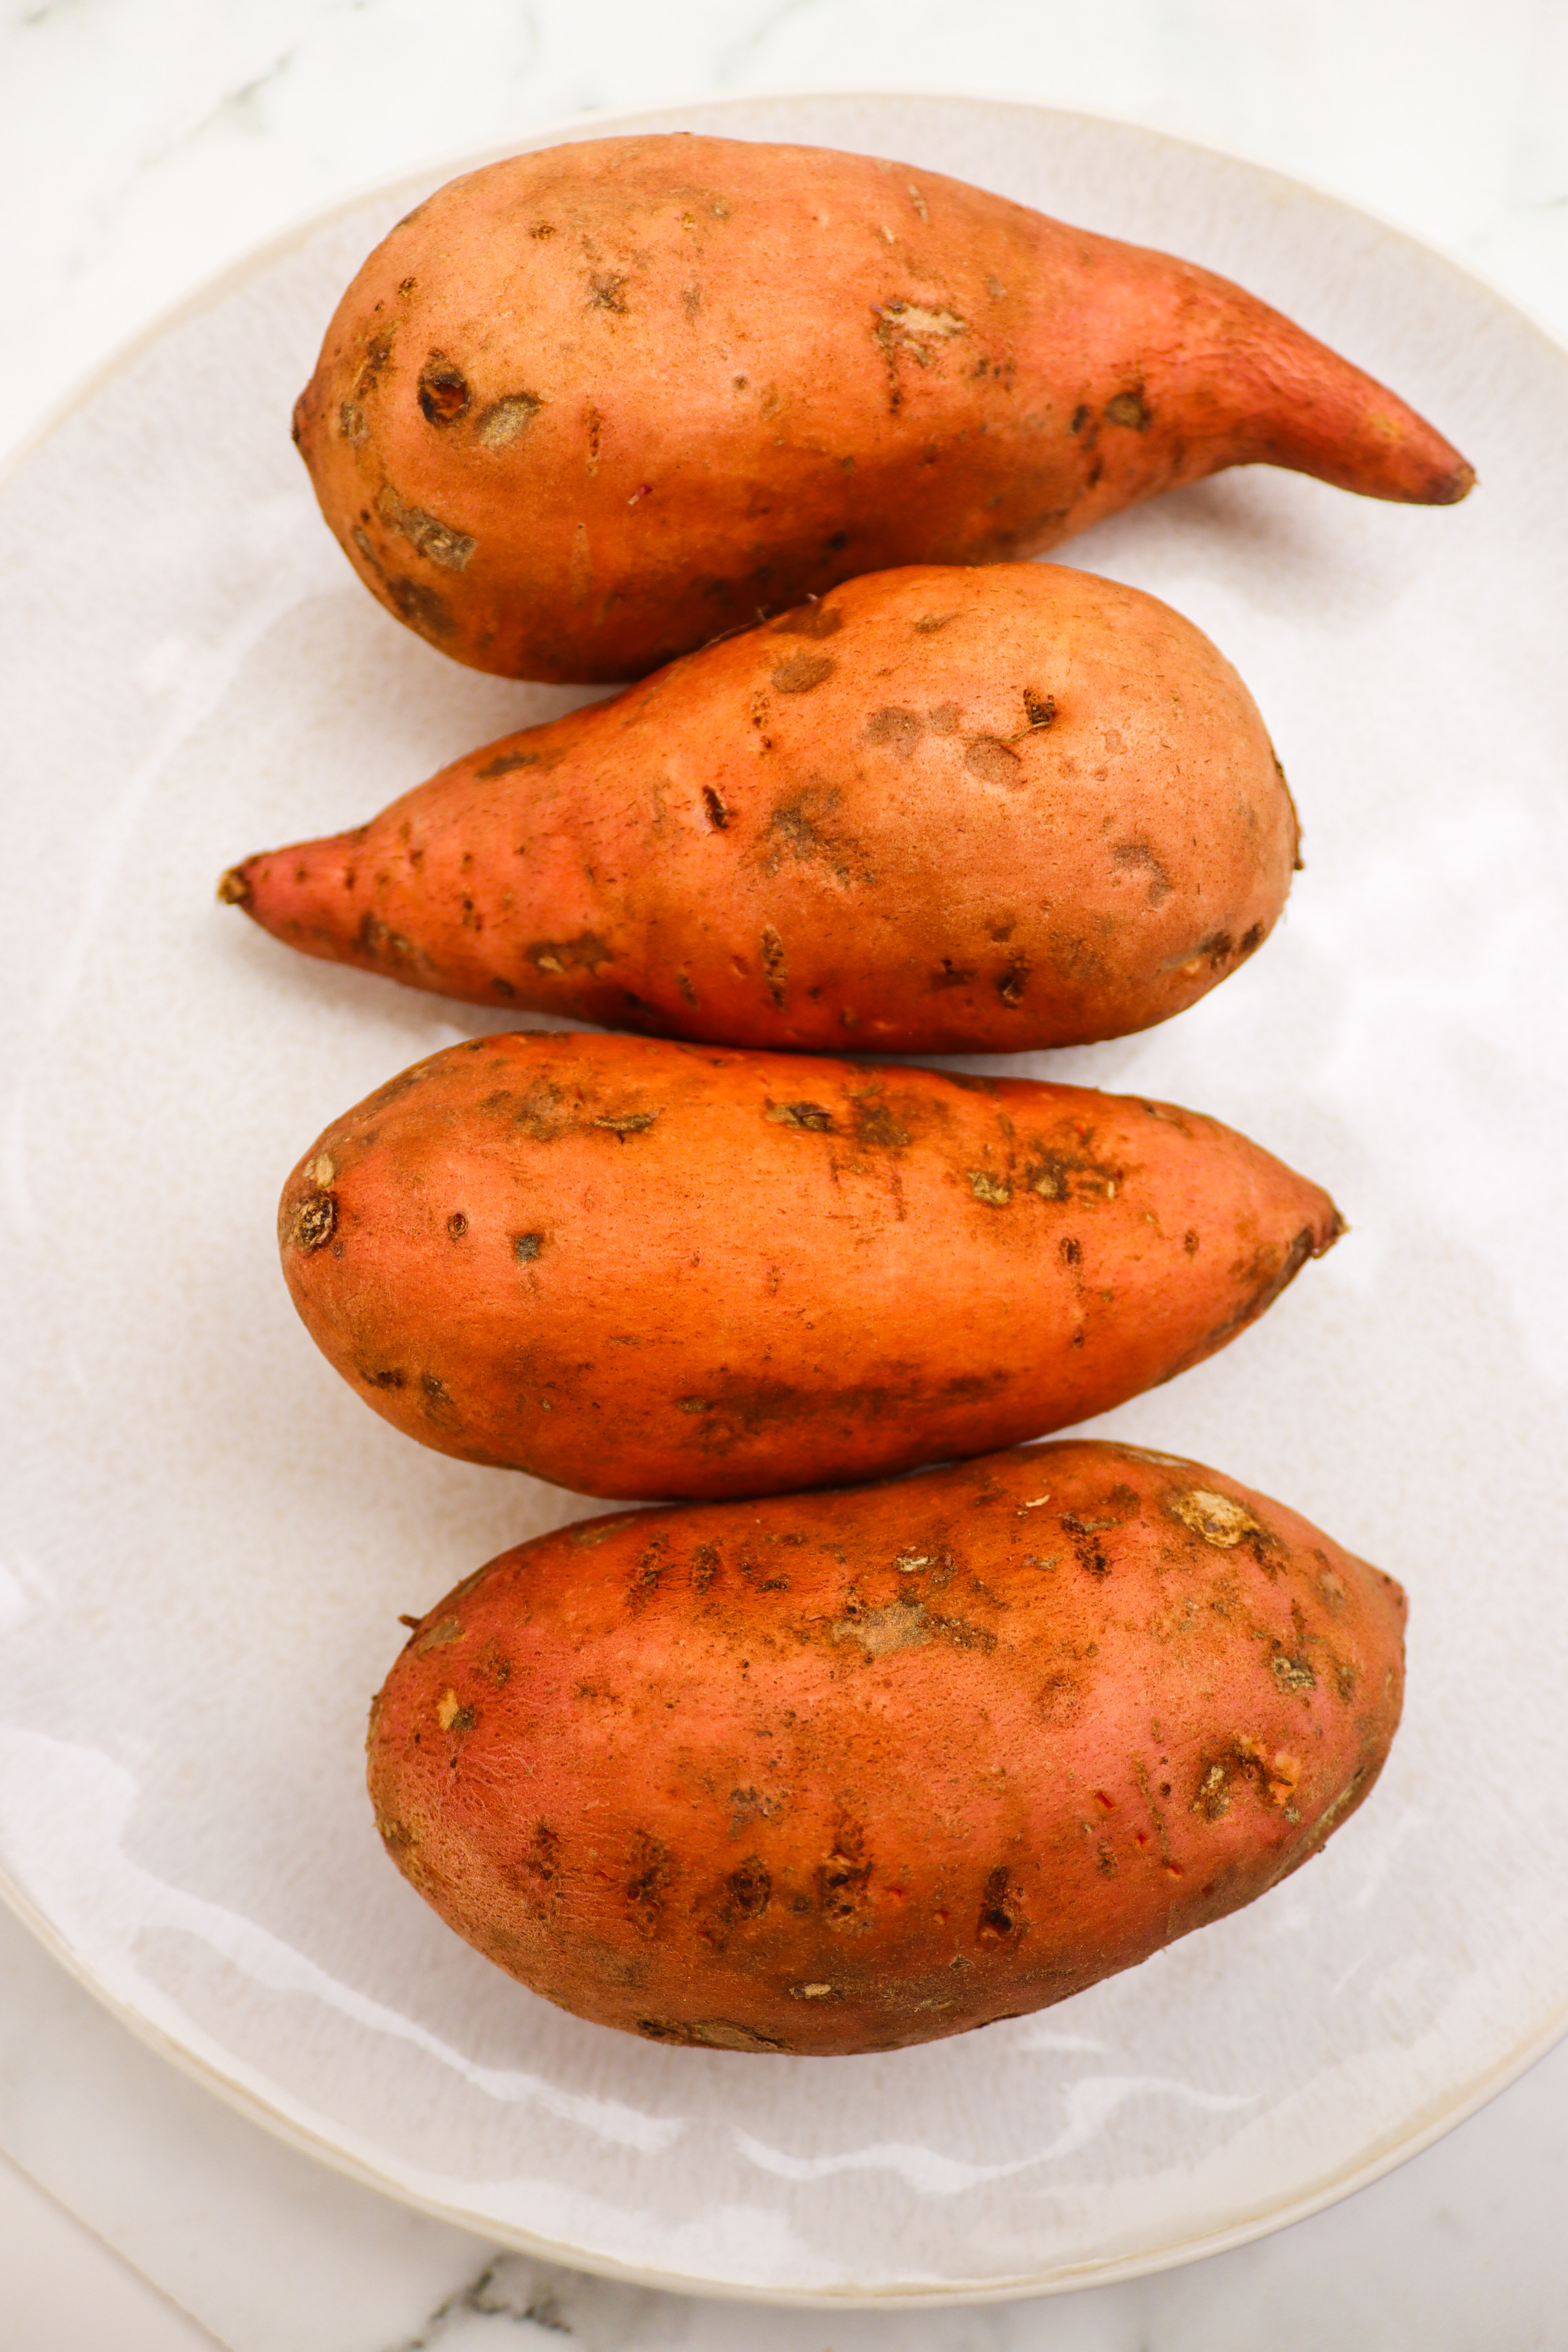 Baked Sweet Potato Recipe ingredients